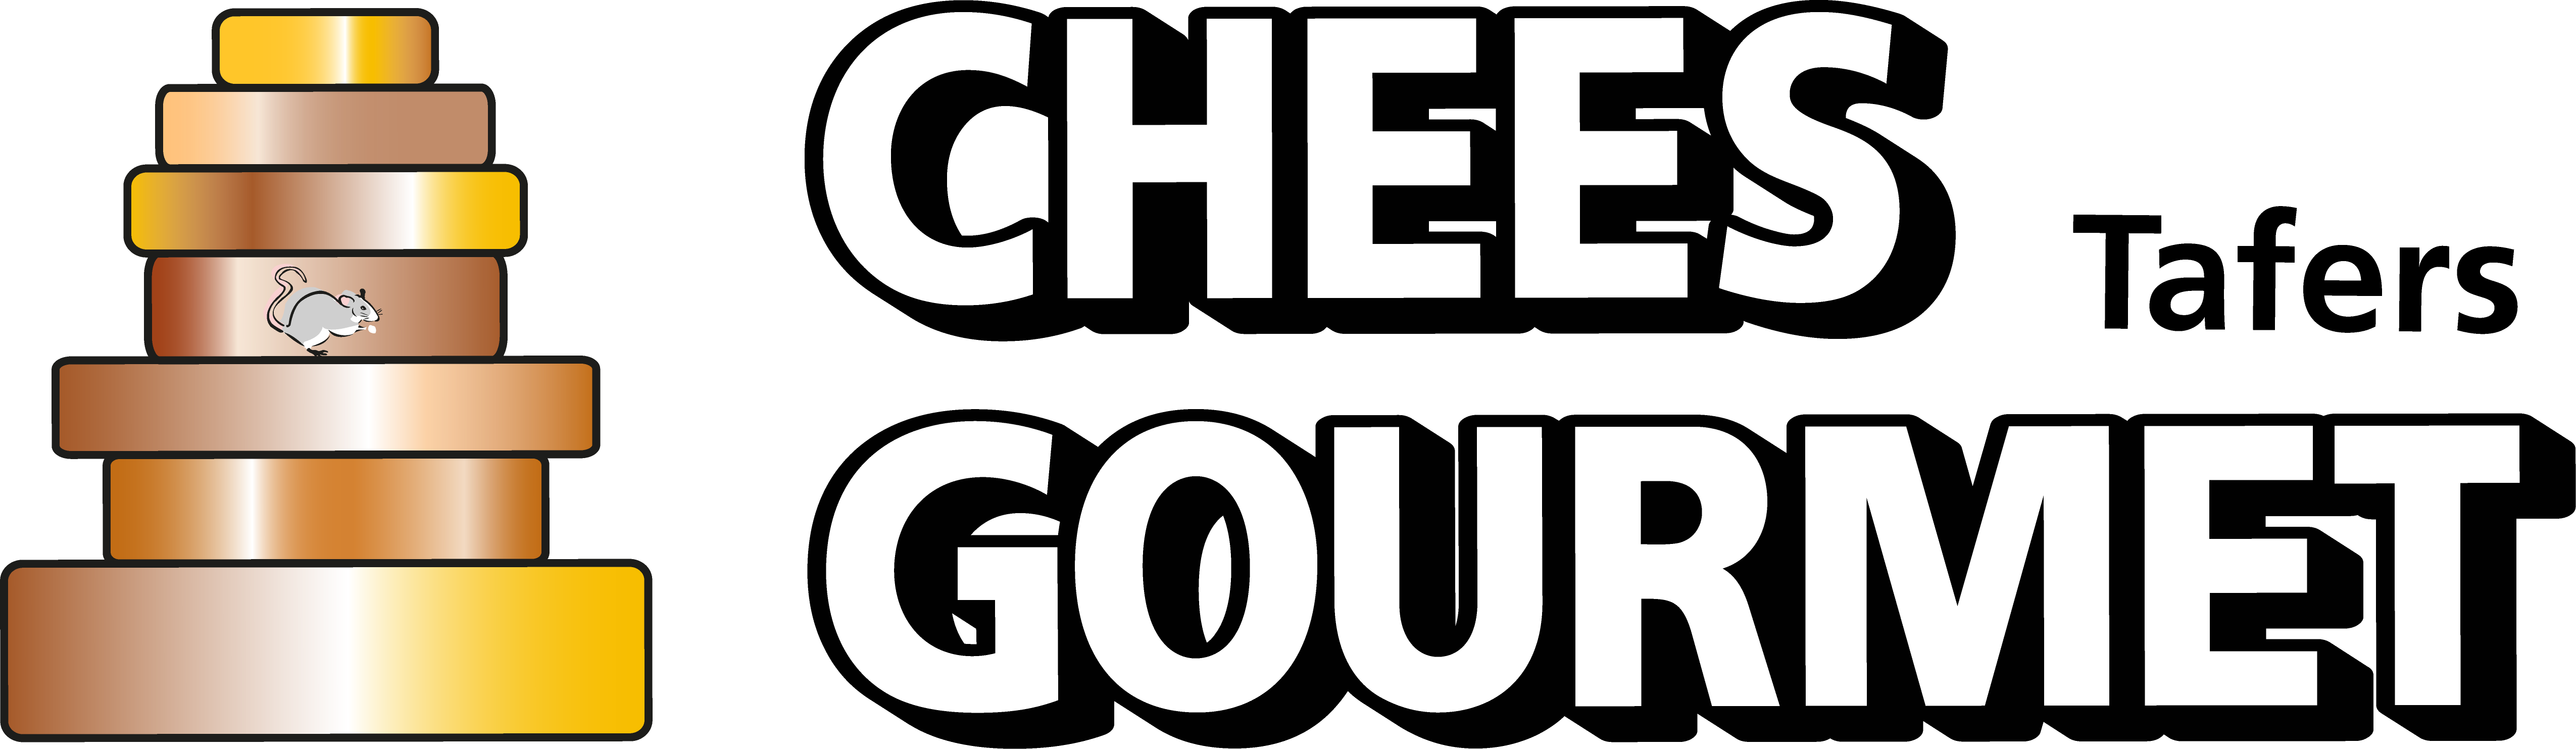 Logo_Chees-Gourmet